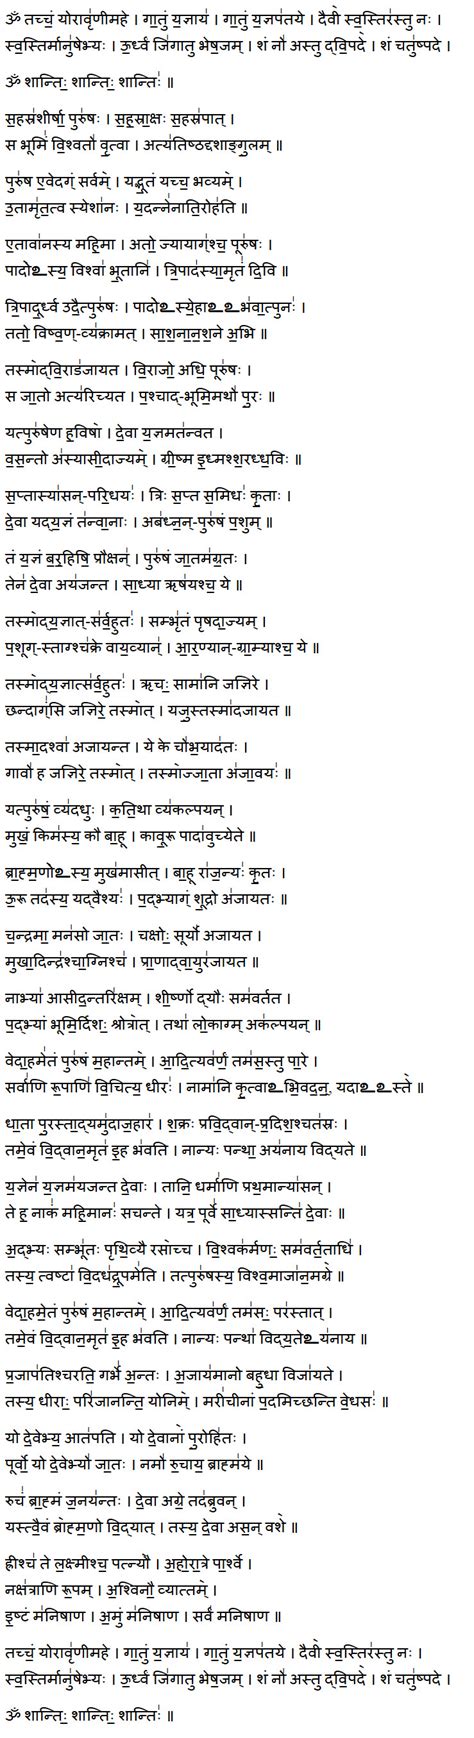 Narayana Suktam Lyrics In English Pdf